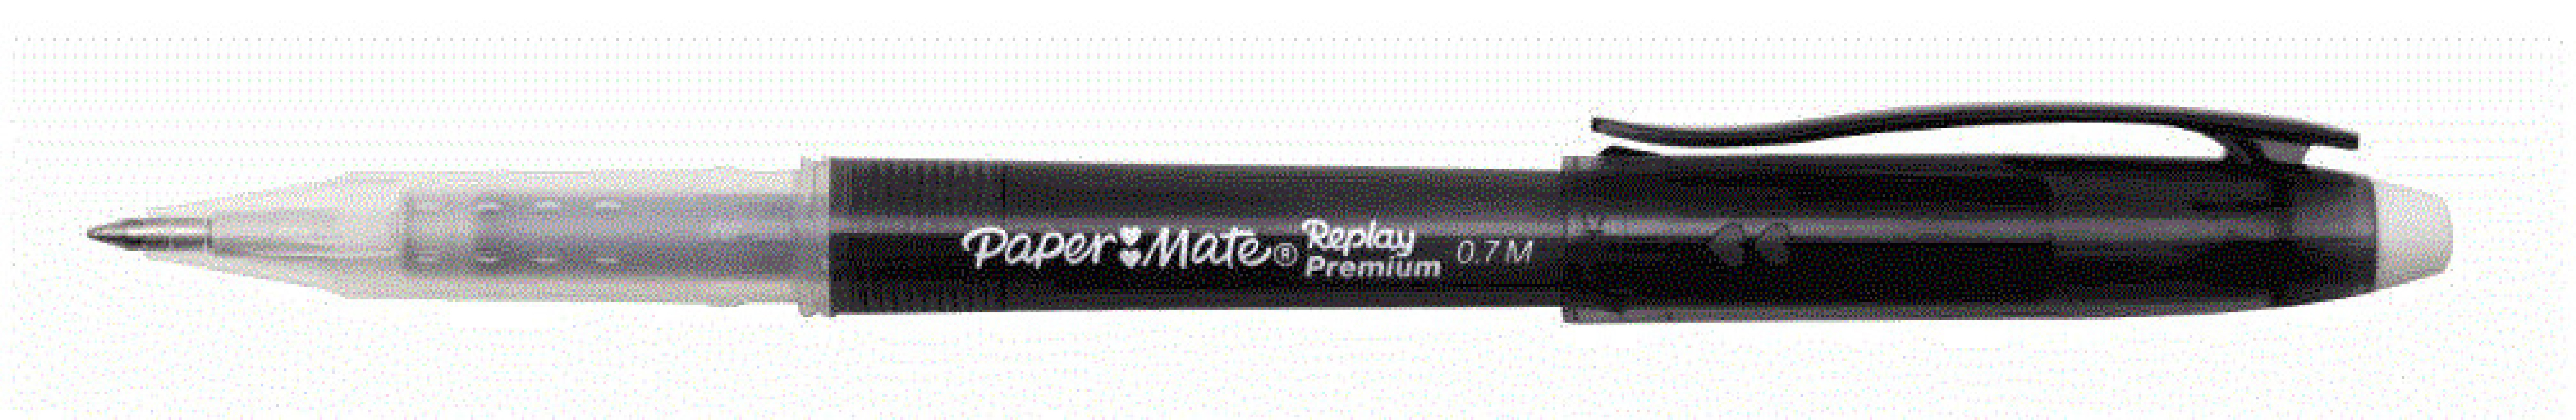 Erasable Pen 0.7 Black Replay Premium Paper Mate